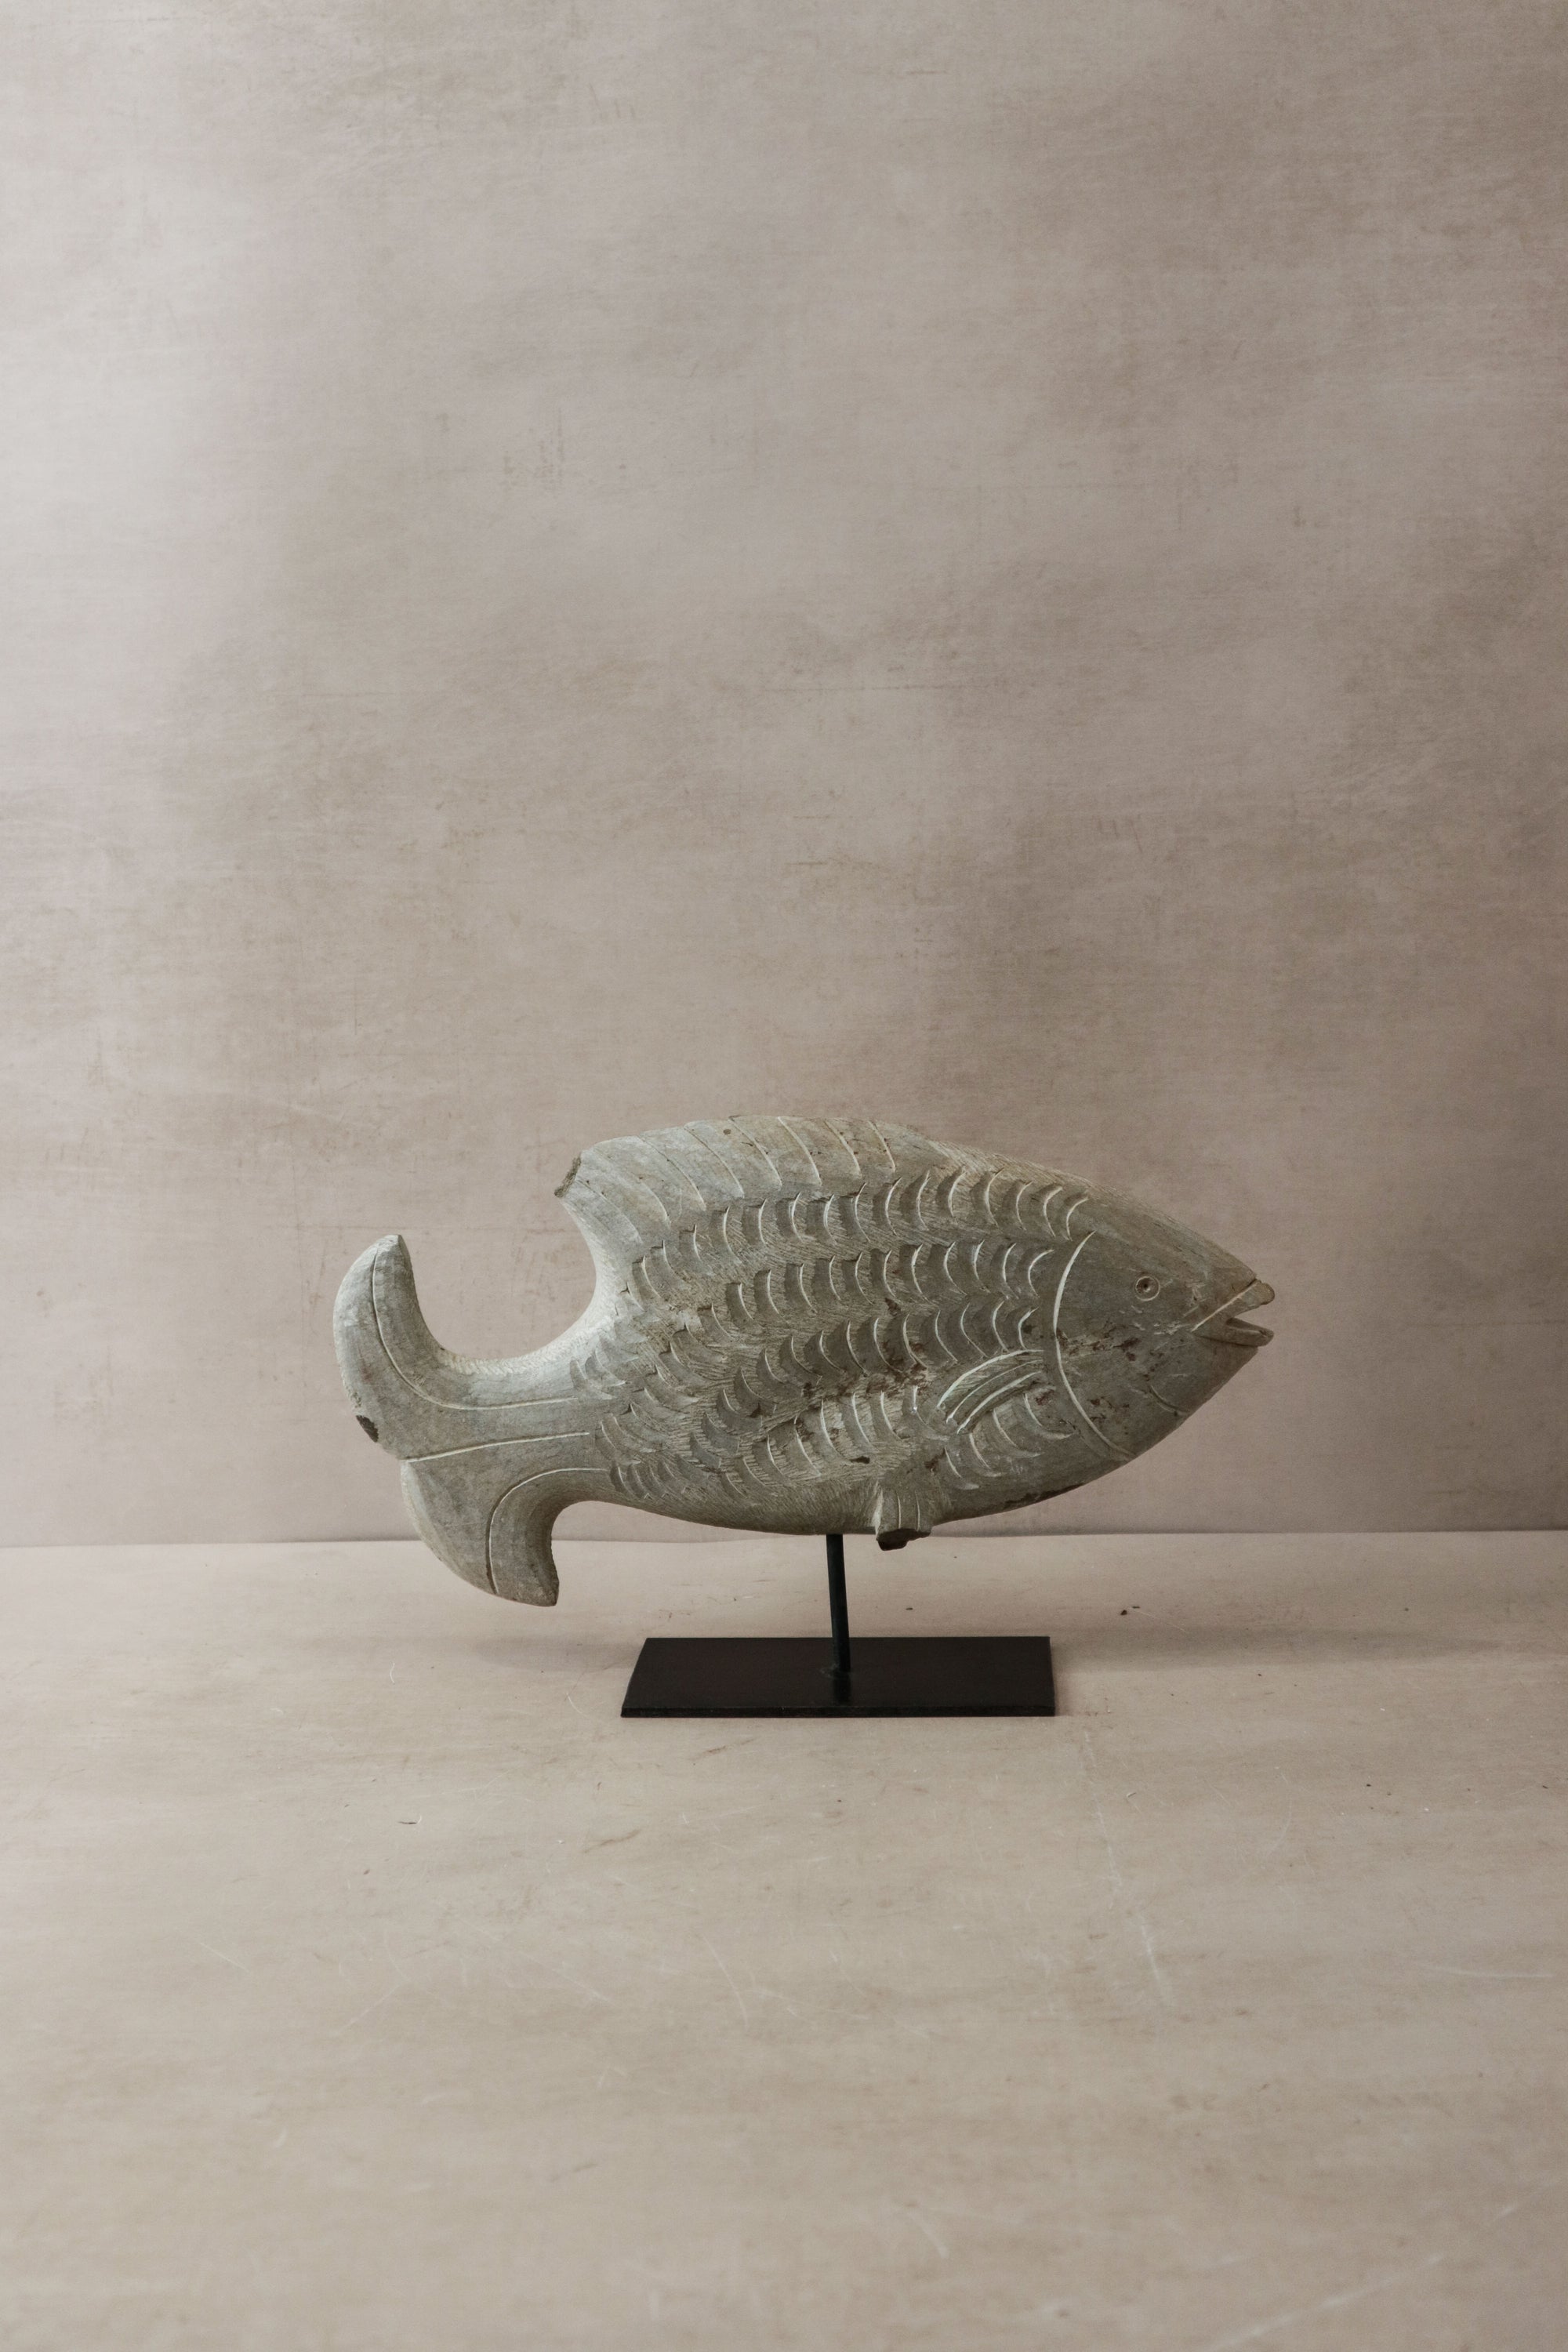 Stone Fish Sculpture - Zimbabwe - 37.1